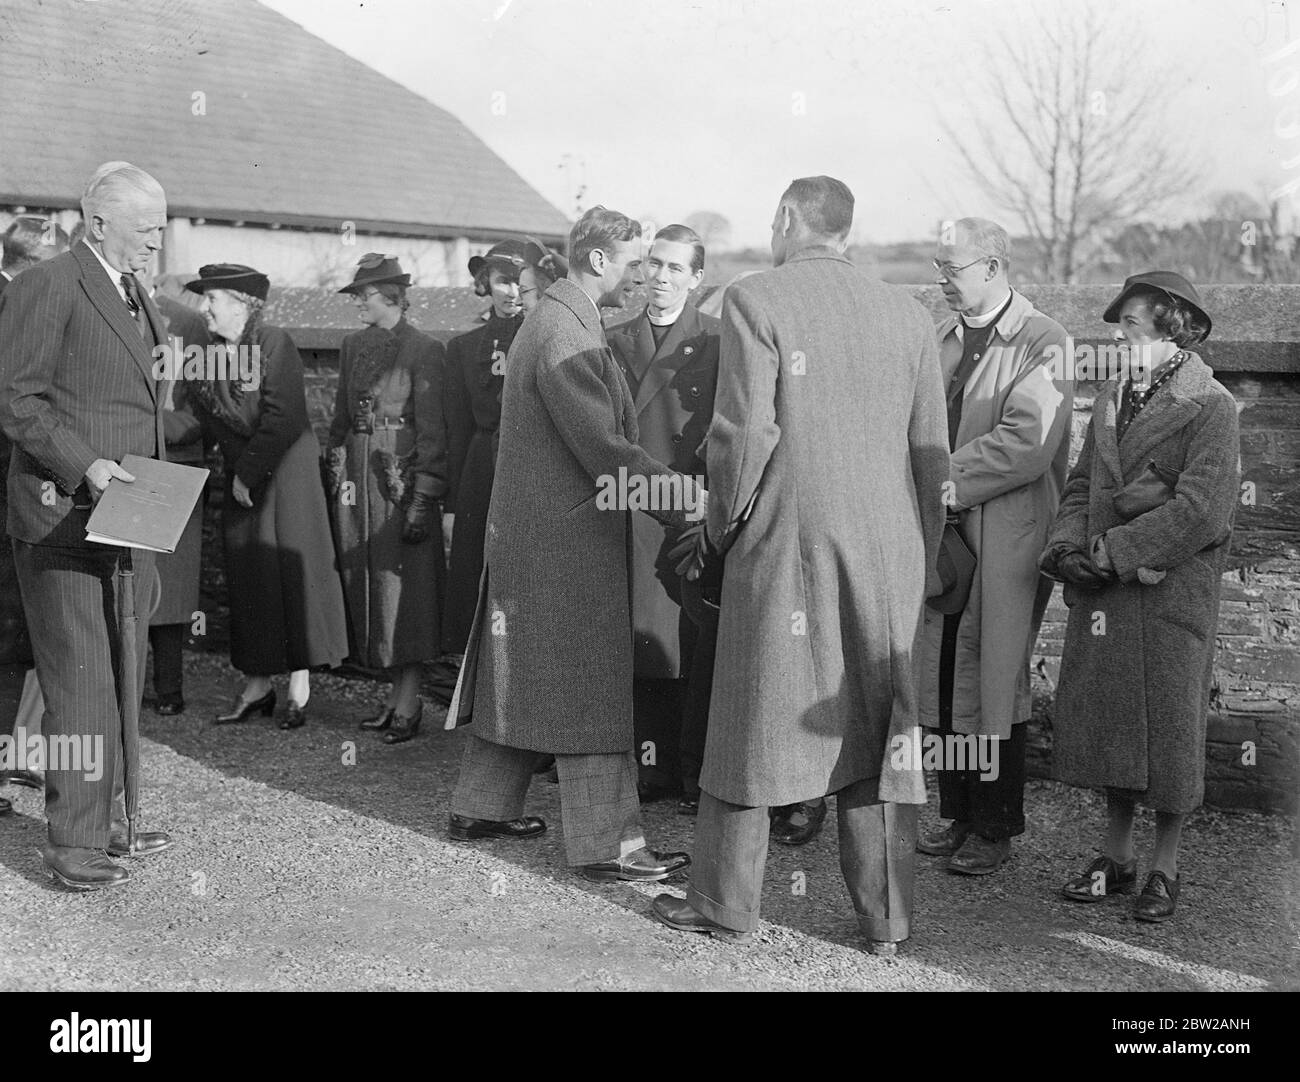 Re ispeziona la sua fattoria di casa a Stoke Climsland durante il tour del Ducato. Il re ricevette un caloroso benvenuto dagli inquilini quando arrivò alla fattoria di casa, Stoke Climsland, durante il suo tour della tenuta Ducato di Cornovaglia. 1 dicembre 1937 Foto Stock